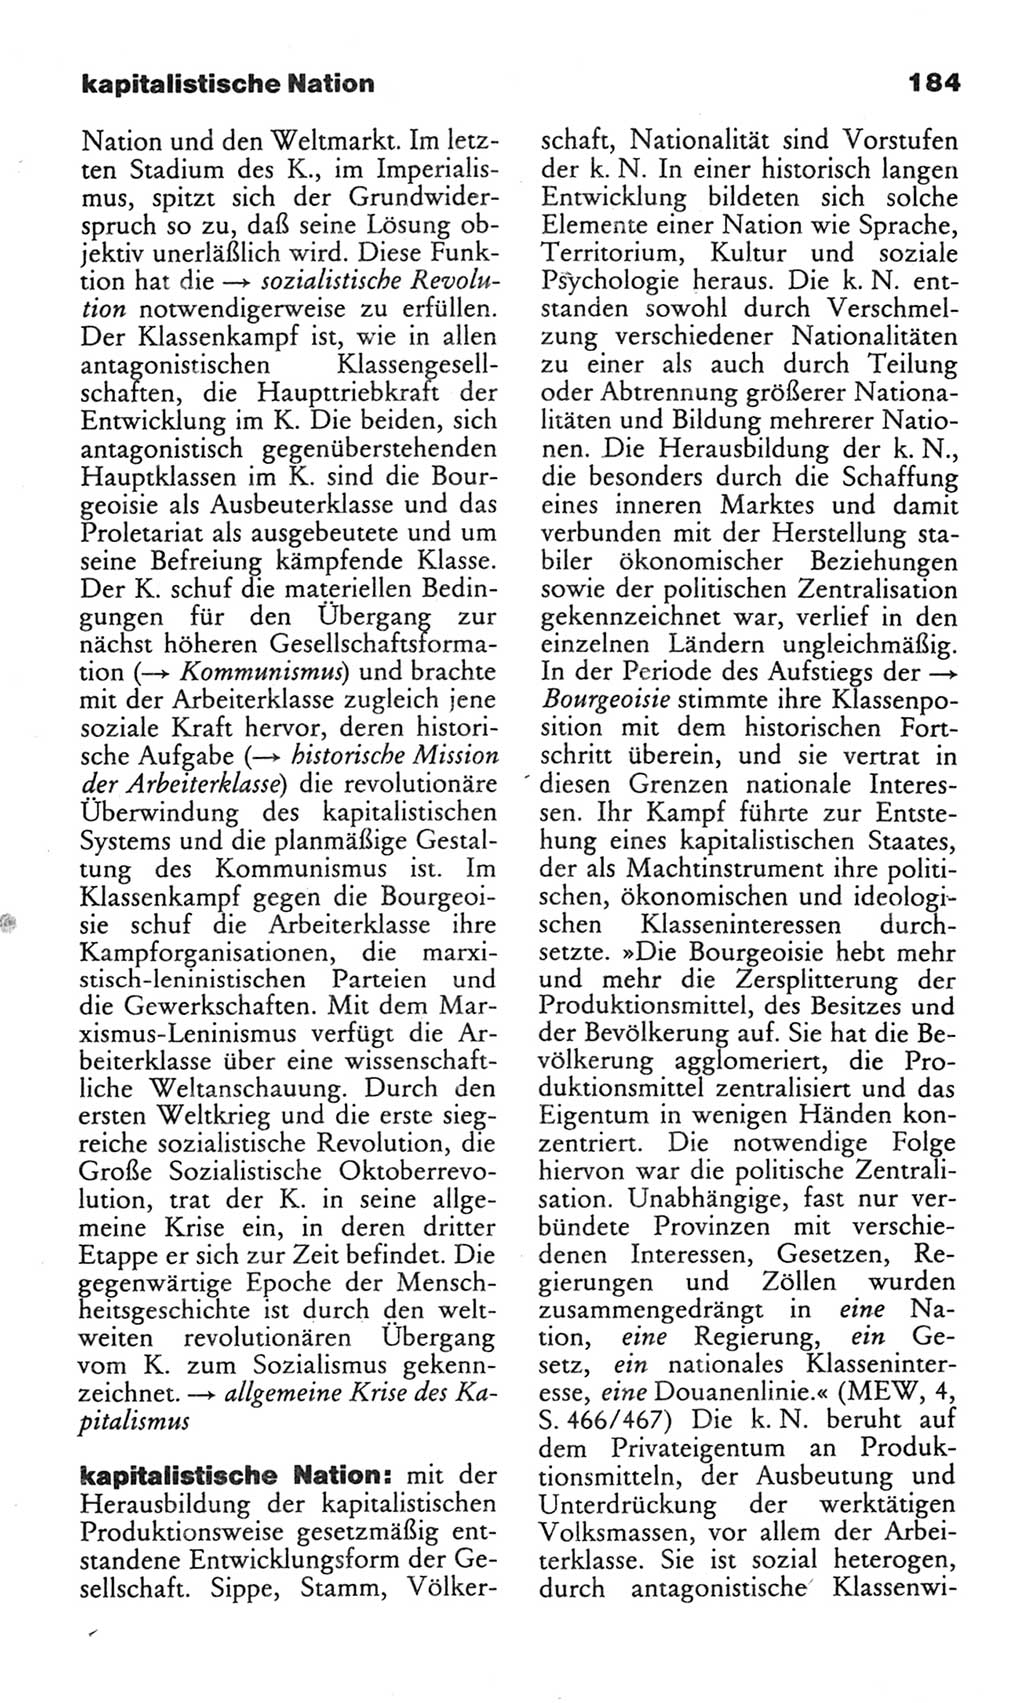 Wörterbuch des wissenschaftlichen Kommunismus [Deutsche Demokratische Republik (DDR)] 1982, Seite 184 (Wb. wiss. Komm. DDR 1982, S. 184)